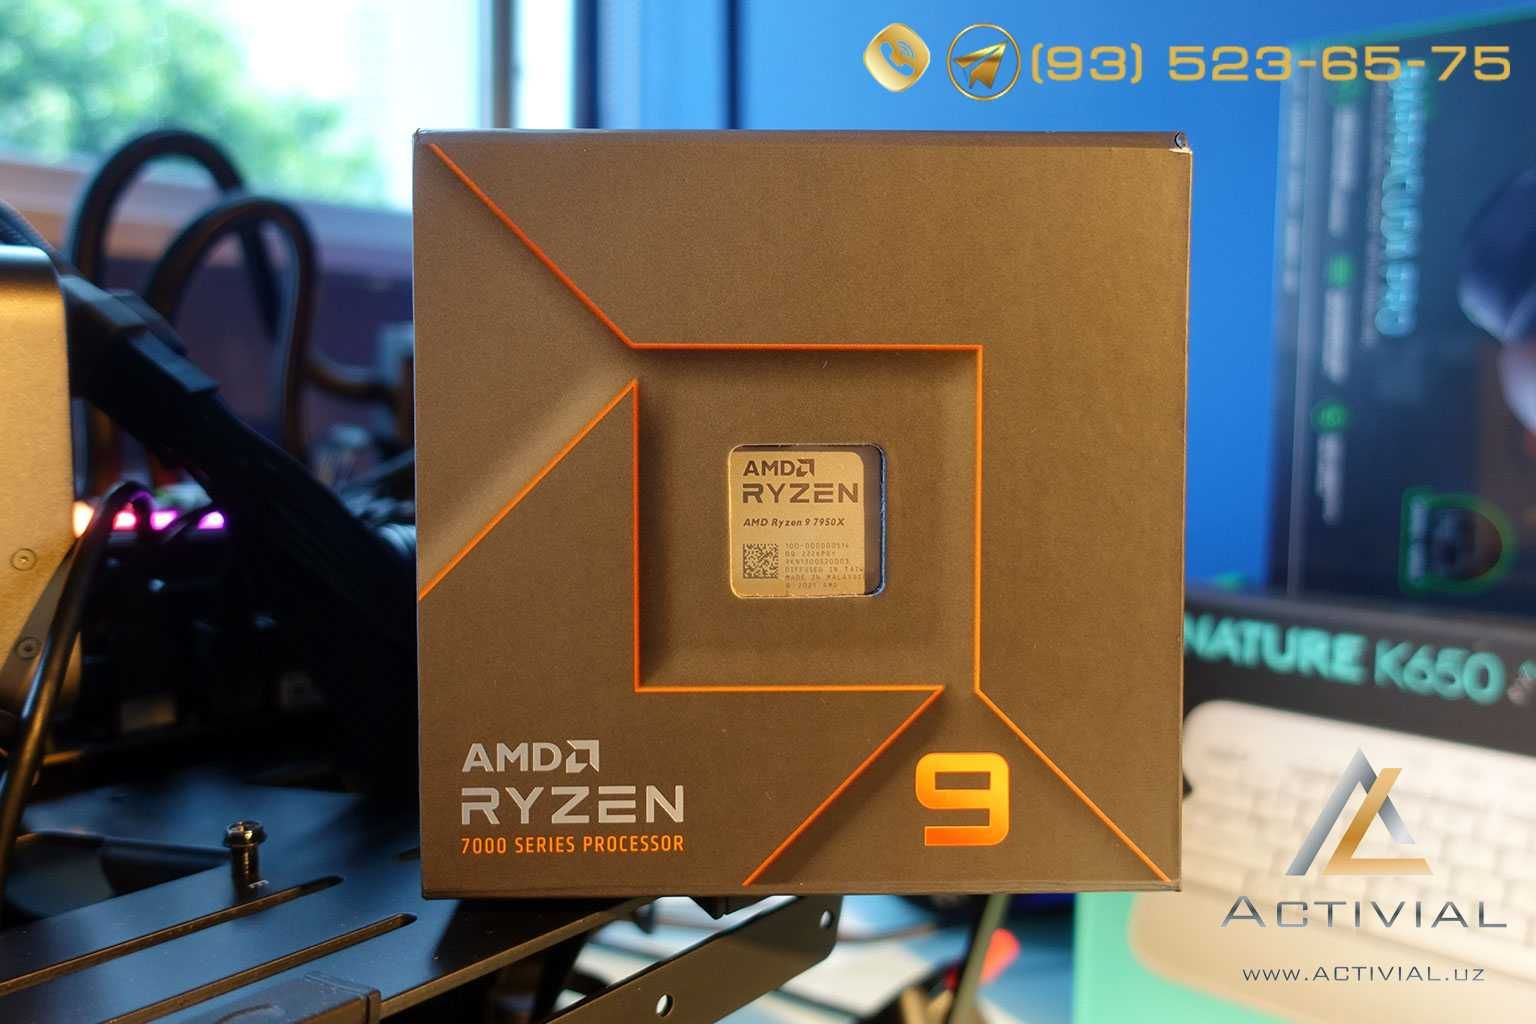 Король производительности AMD Ryzen 7950X от офиц. поставщика!